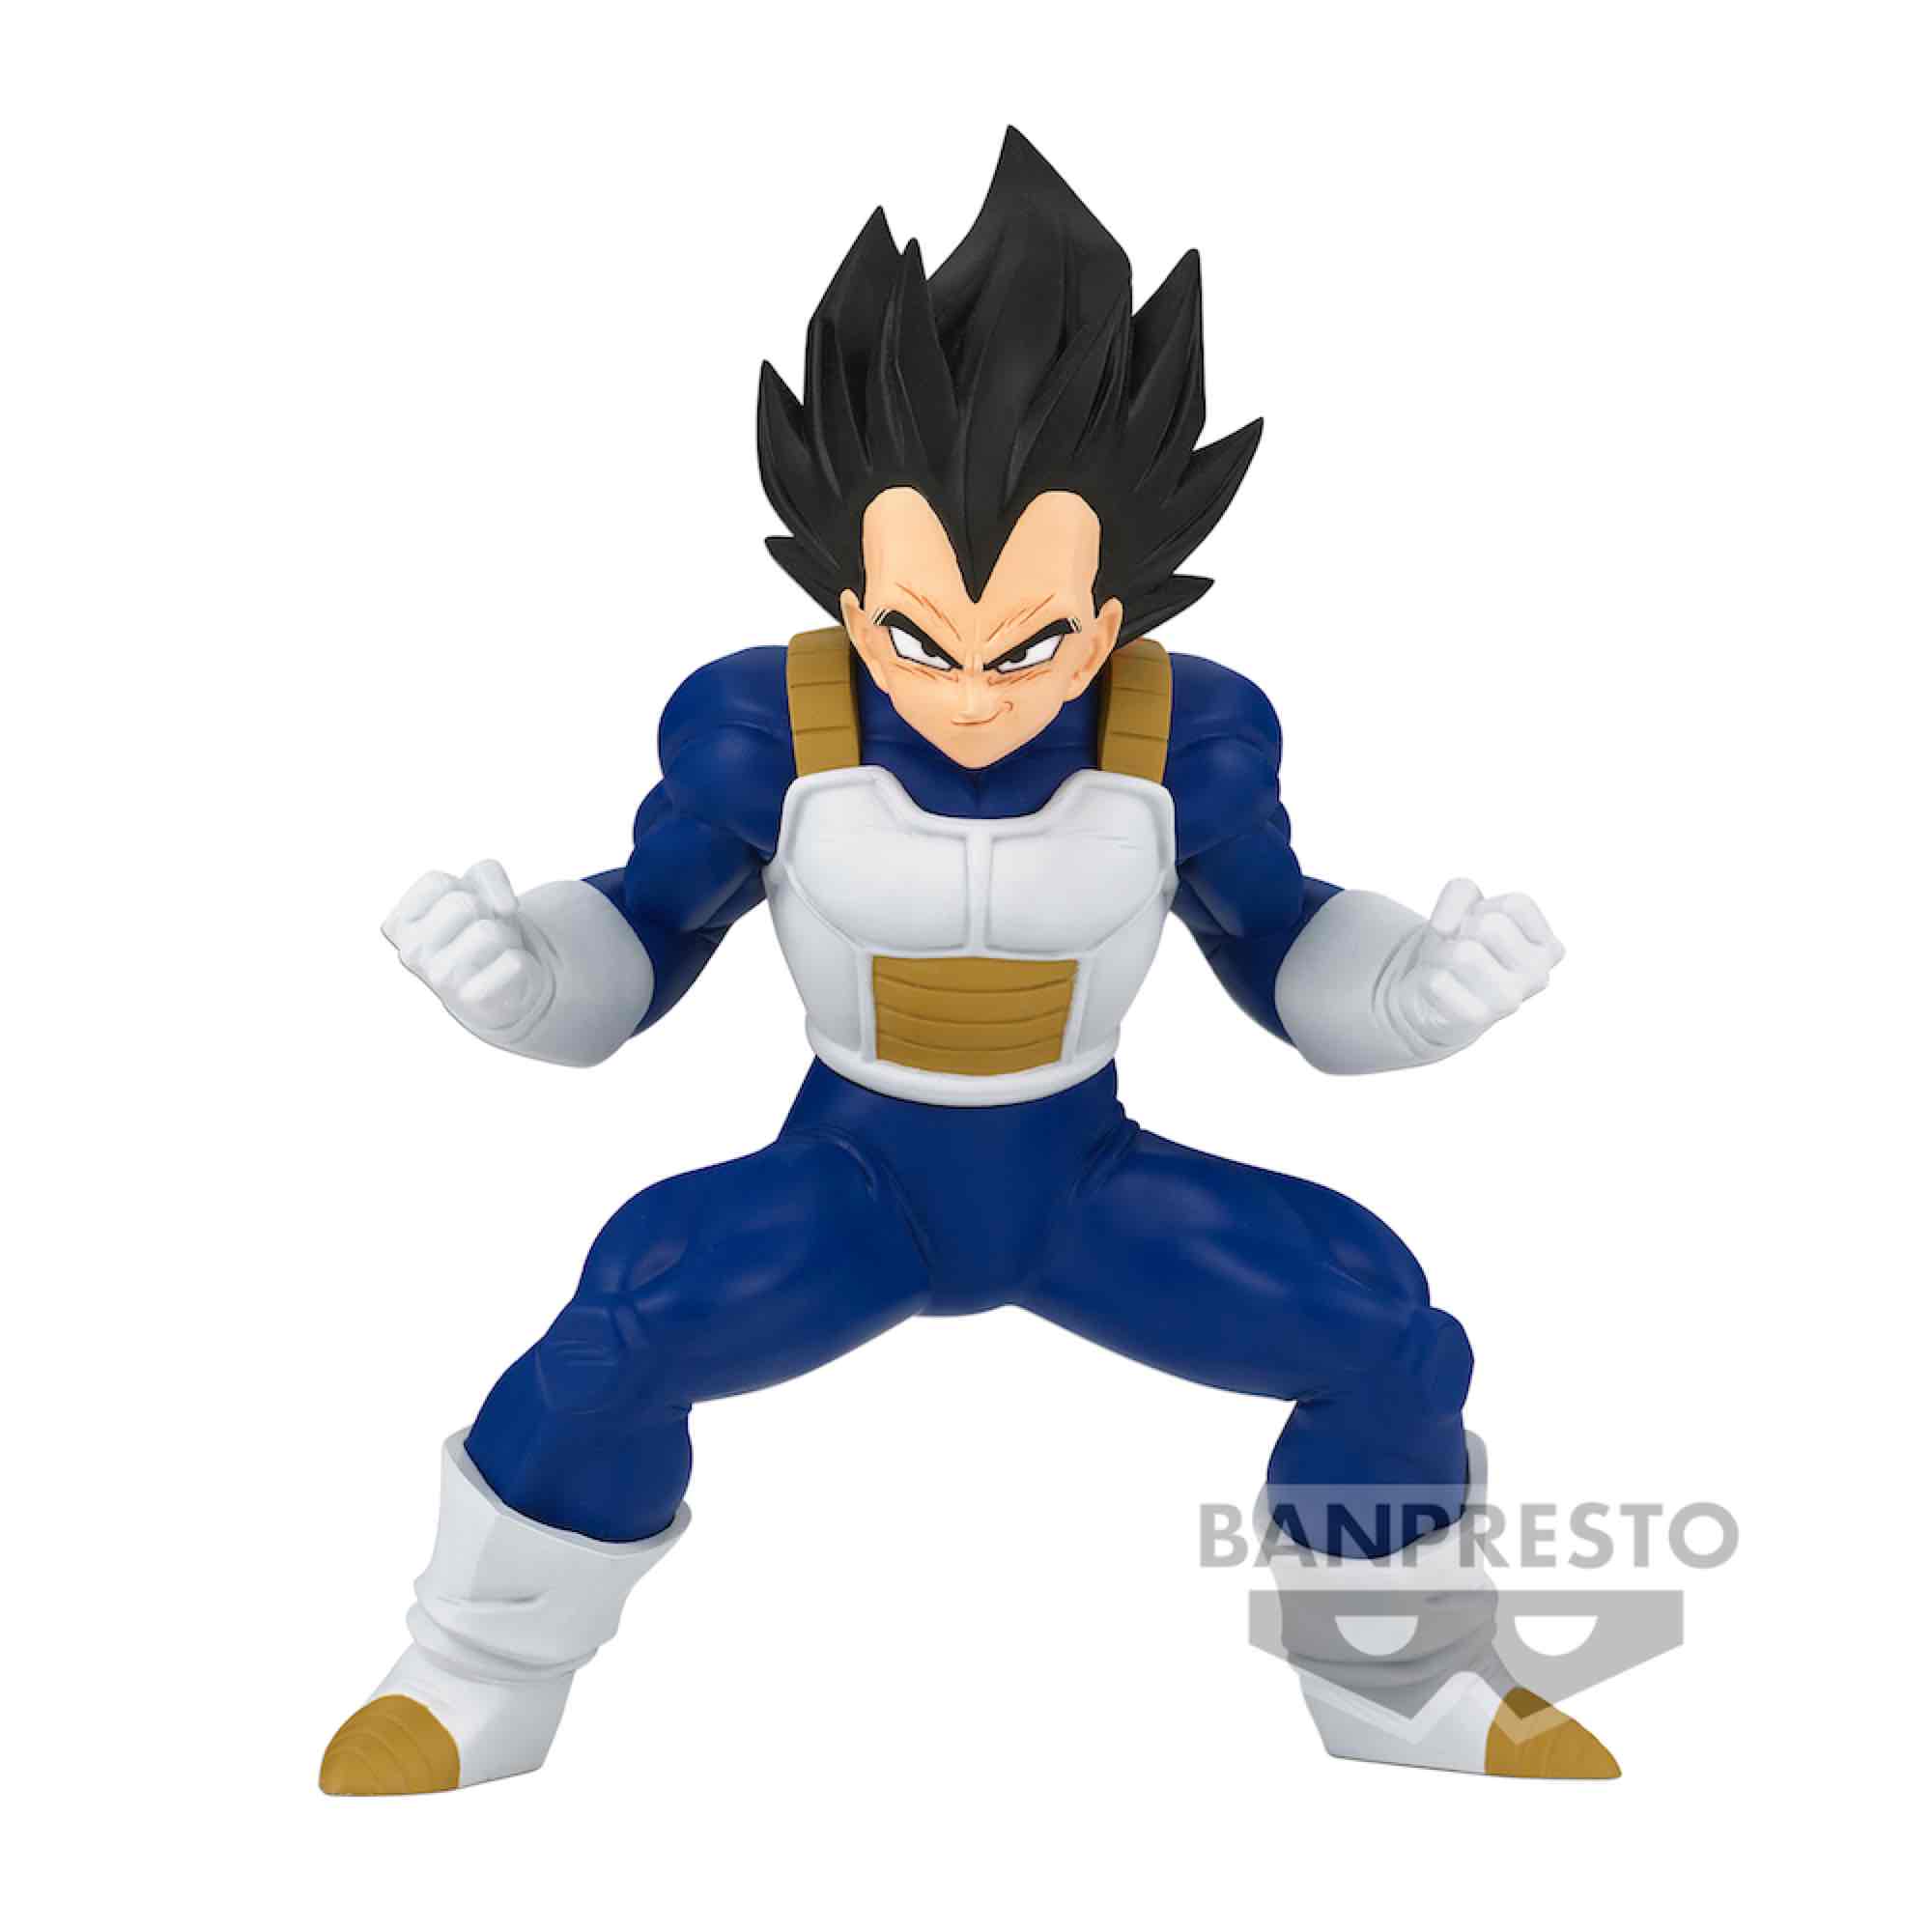 Boneco Dragon Ball Super Goku Super Saiyajin Blue Big Size King Clustar  Bandai Banpresto